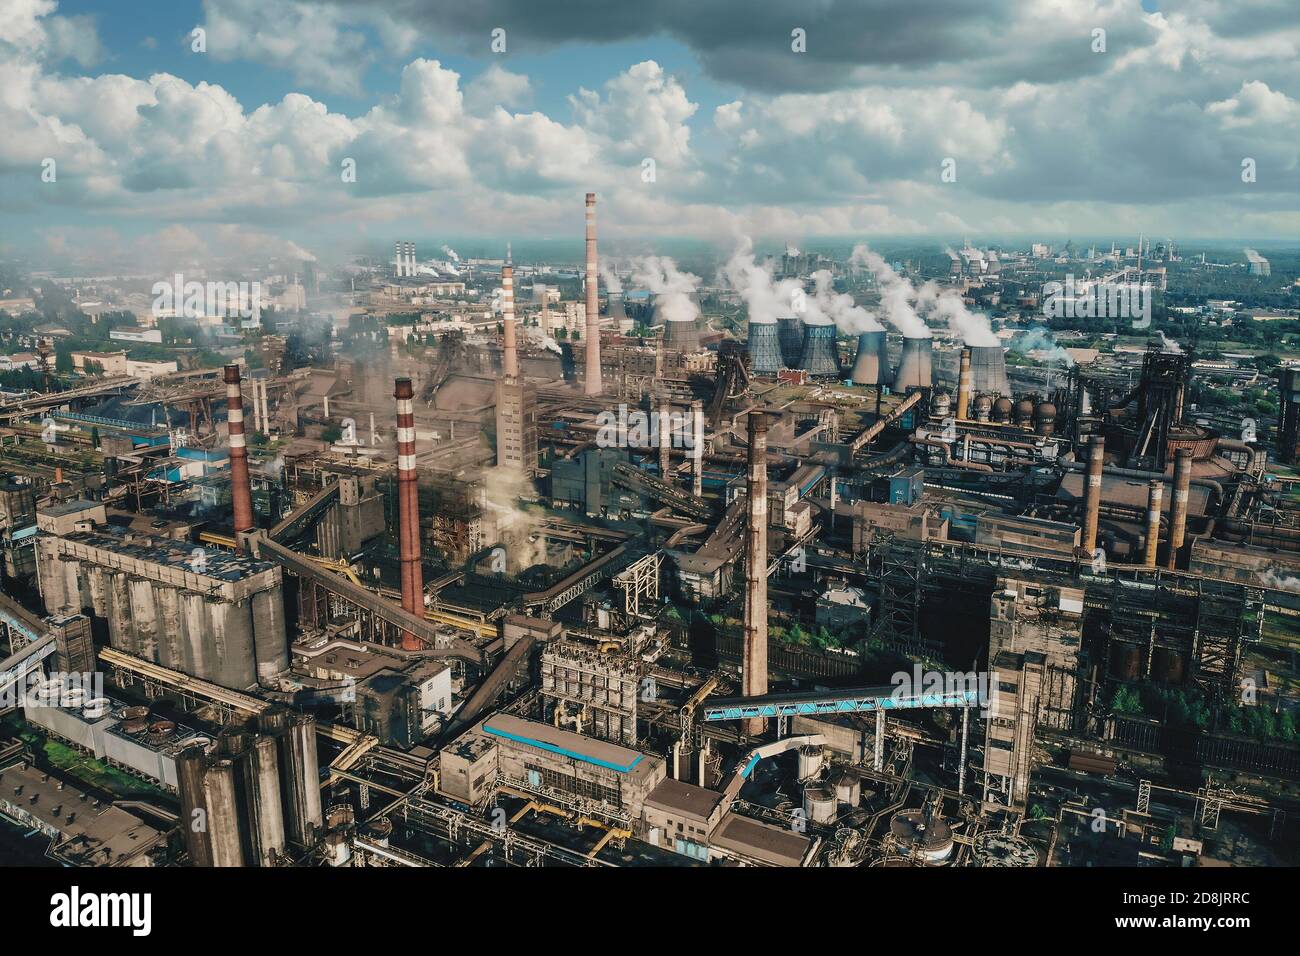 Ölindustrie. Luftaufnahme der Petrochemischen Industrie Fabrik, Schwerindustrie, Raffinerieproduktion mit Rauchverschmutzung. Stockfoto